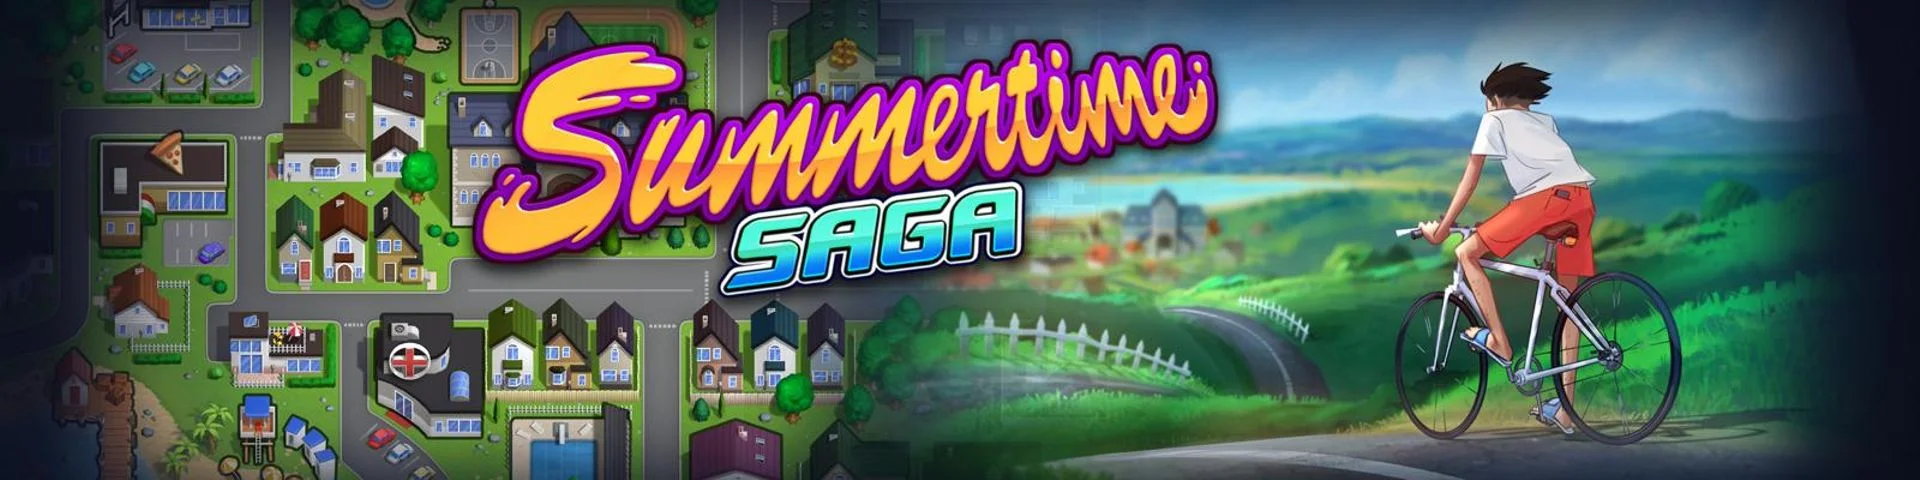 Summertime Saga v.21.0.0 wip.4468